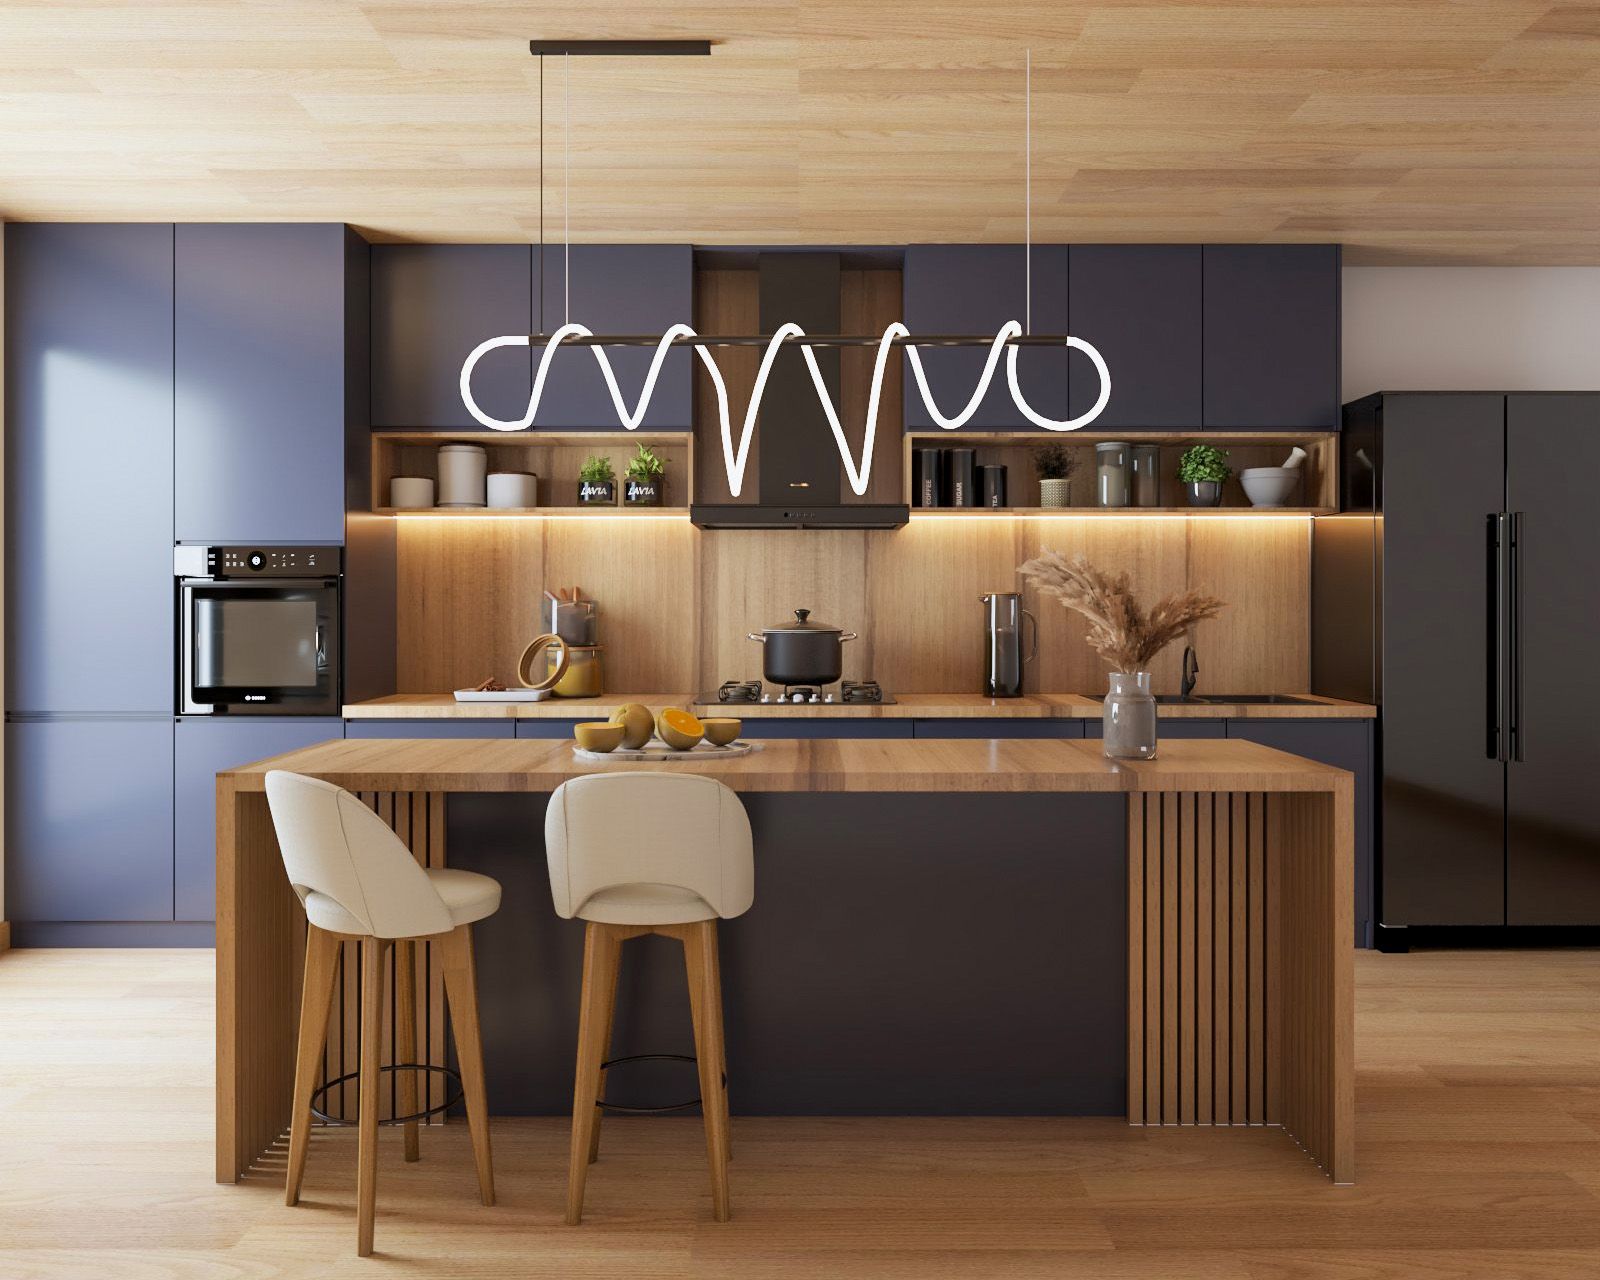 Modern Blue And Wood Modular Regalia Kitchen Design With Kitchen Island